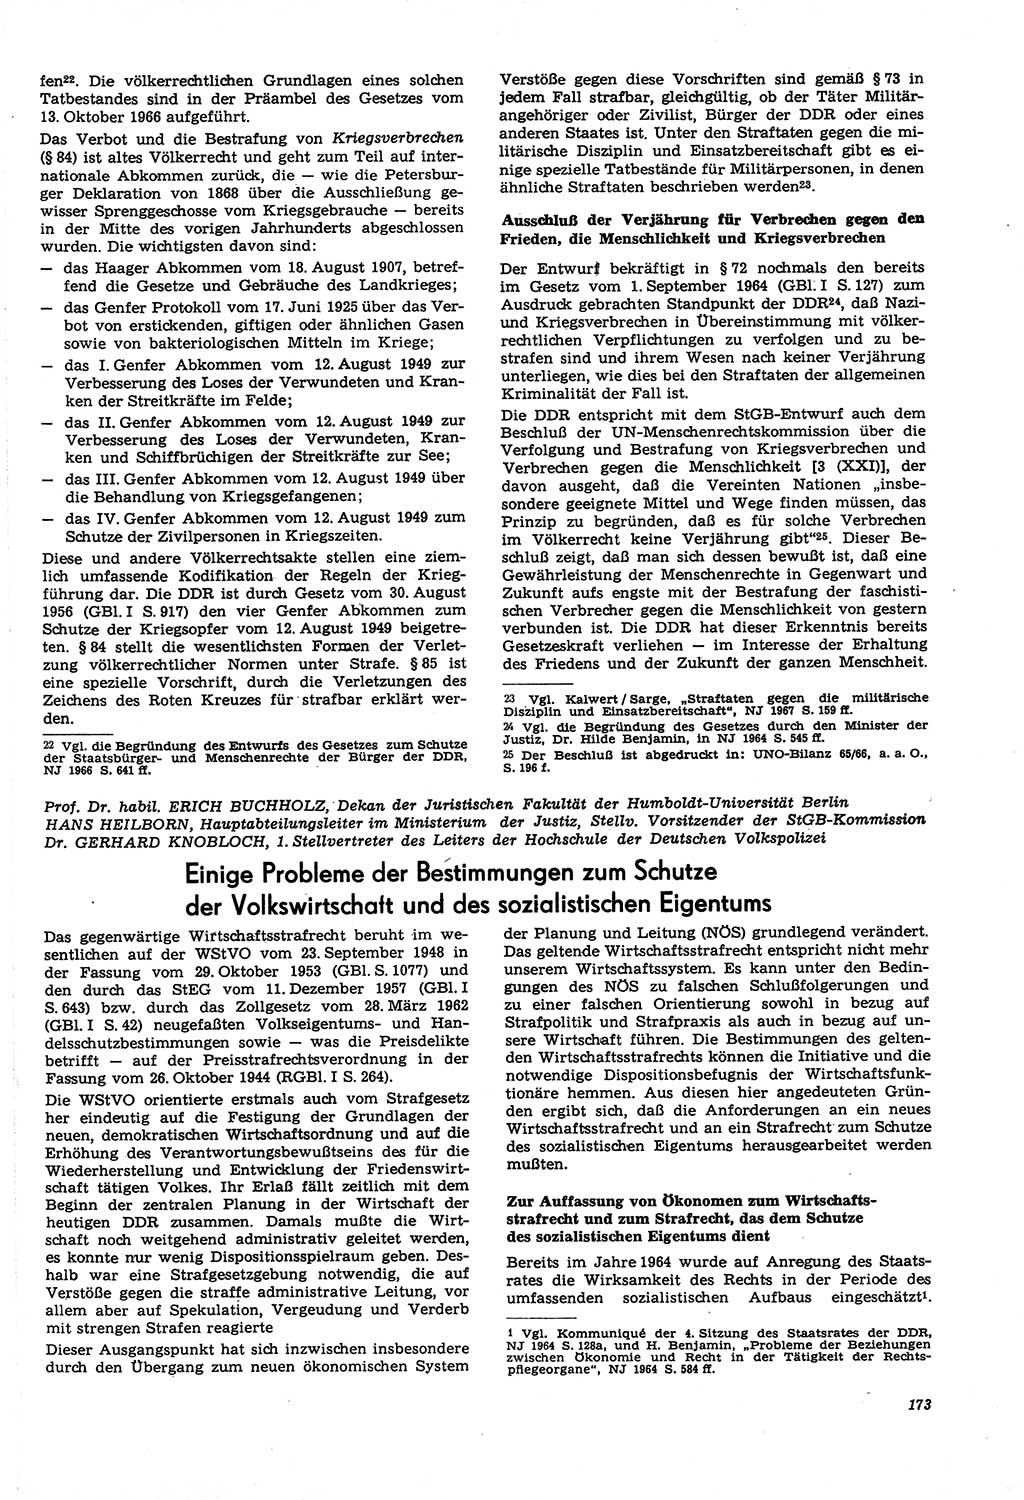 Neue Justiz (NJ), Zeitschrift für Recht und Rechtswissenschaft [Deutsche Demokratische Republik (DDR)], 21. Jahrgang 1967, Seite 173 (NJ DDR 1967, S. 173)